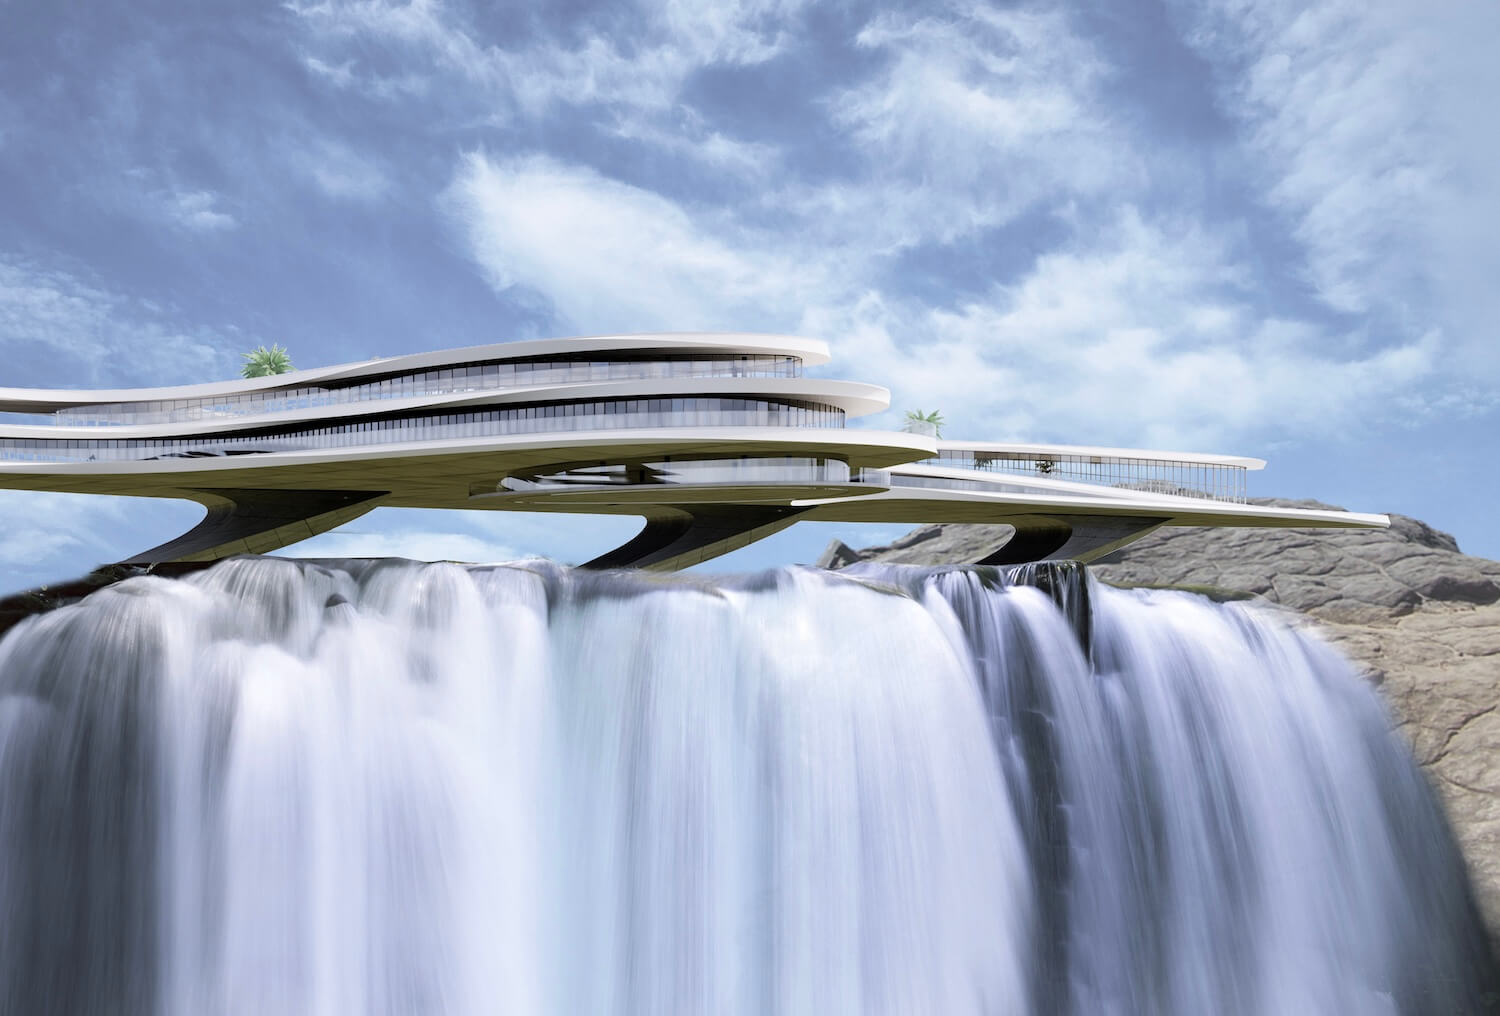 luxury-hotel-over-the-waterfall-viktor-zeleniak